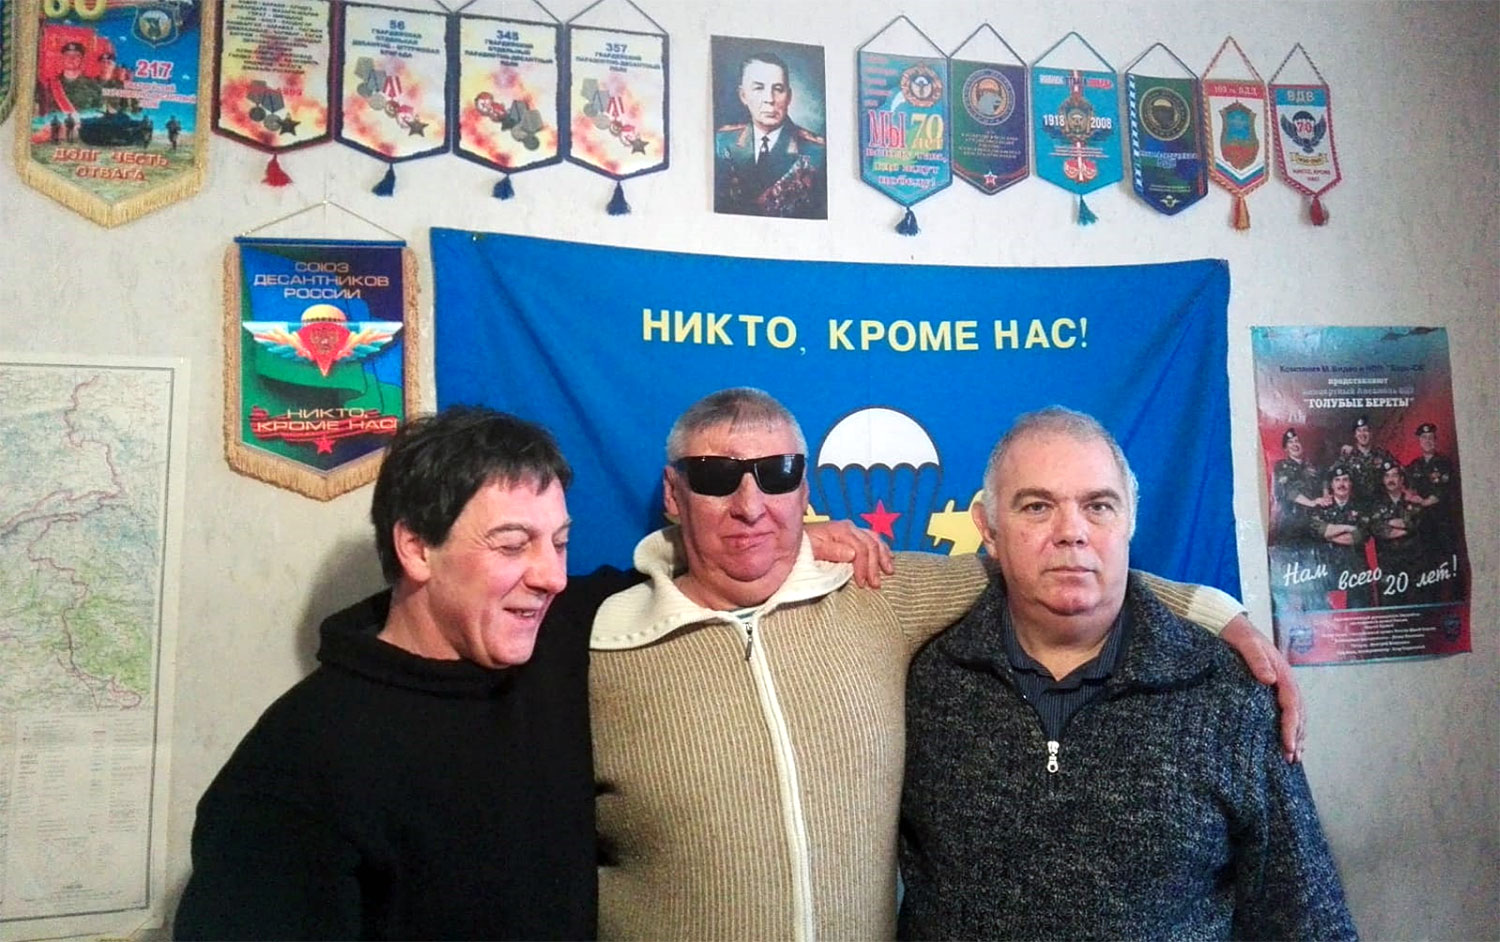 Nella foto da sinistra: Alexandr Gergeì, Michael Shilnikov, Angelo Sinisi.